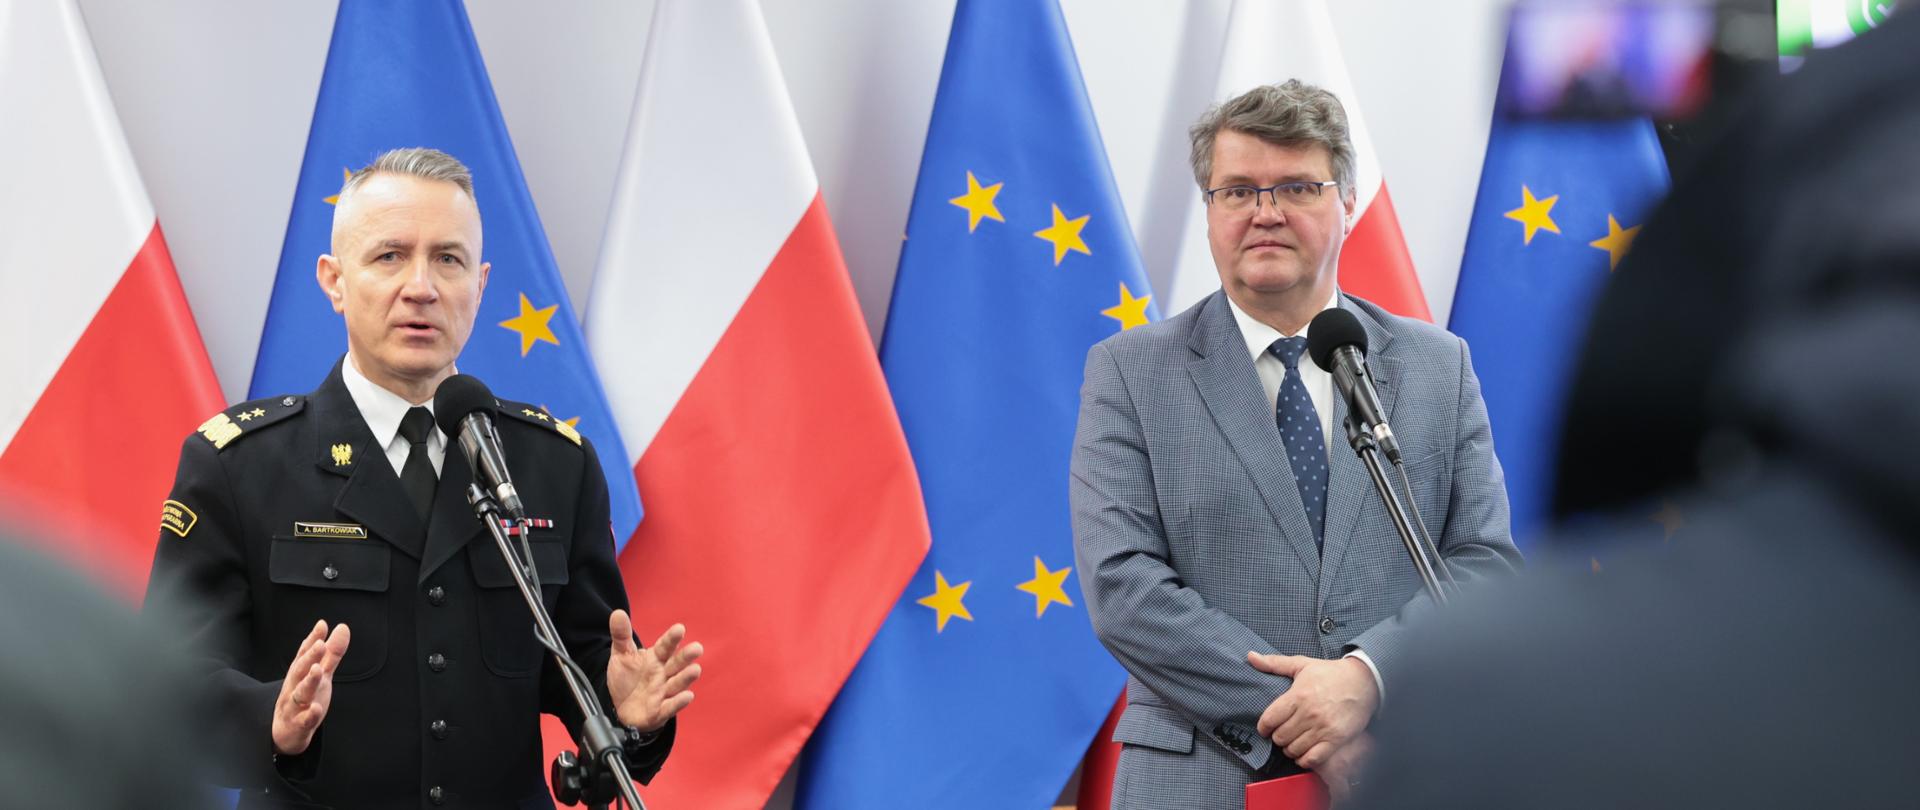 Na zdjęciu Komendant Główny PSP w czarnym mundurze wyjściowym po prawej Minister Wąsik z szarym mundurze. W tle Flagi biało czerwone oraz flaga Unii Europejskiej niebieska z żółtymi gwiazdkami.